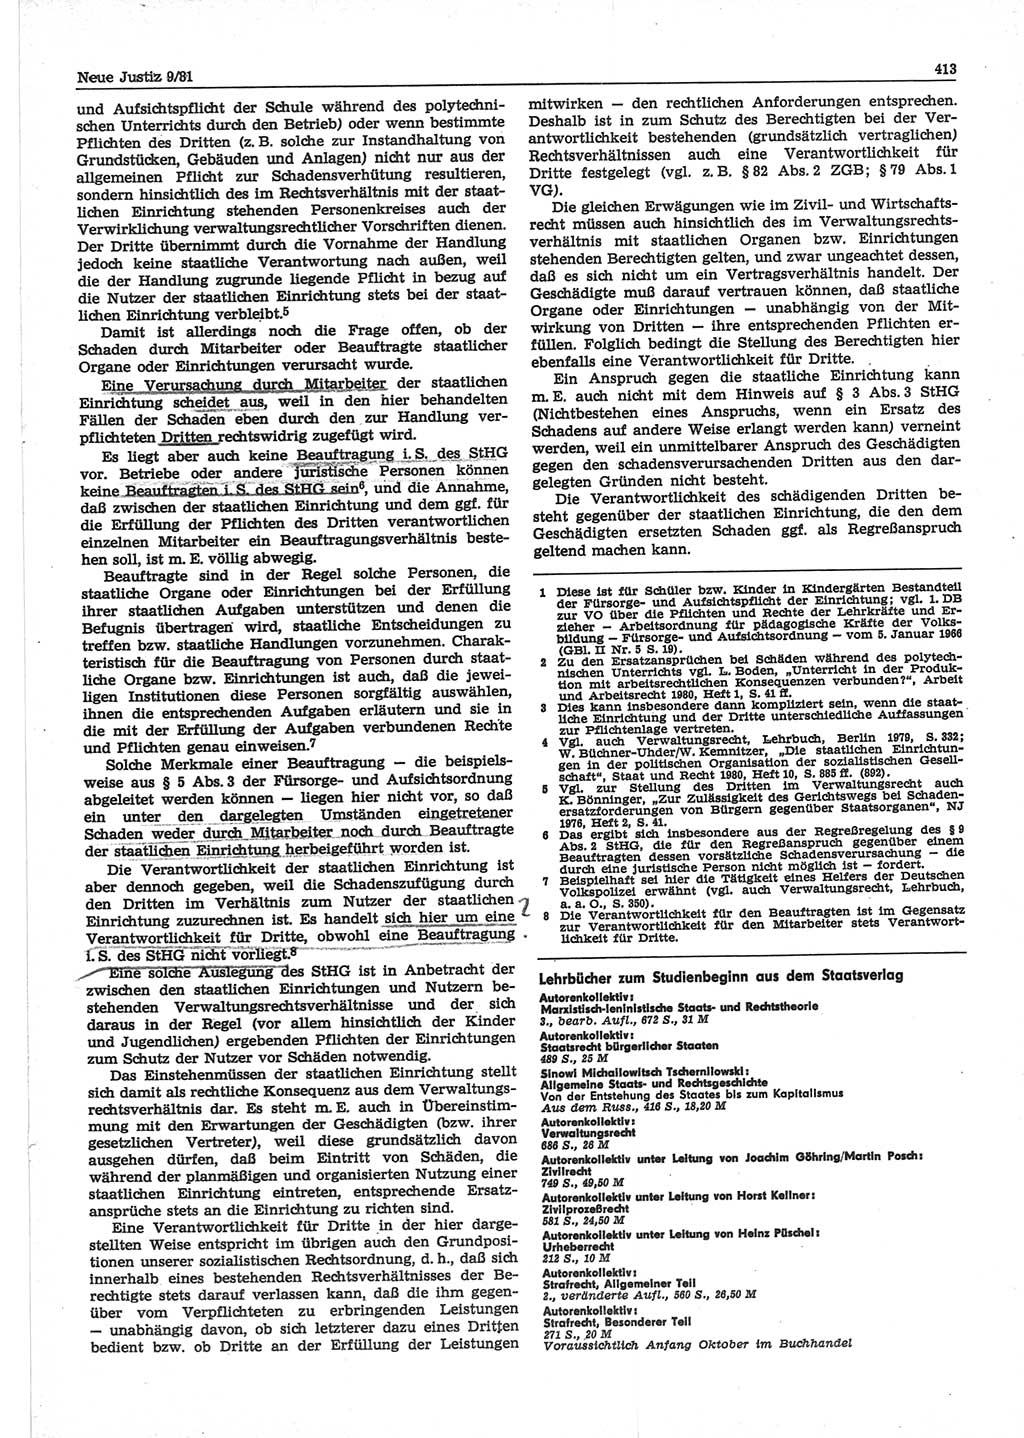 Neue Justiz (NJ), Zeitschrift für sozialistisches Recht und Gesetzlichkeit [Deutsche Demokratische Republik (DDR)], 35. Jahrgang 1981, Seite 413 (NJ DDR 1981, S. 413)